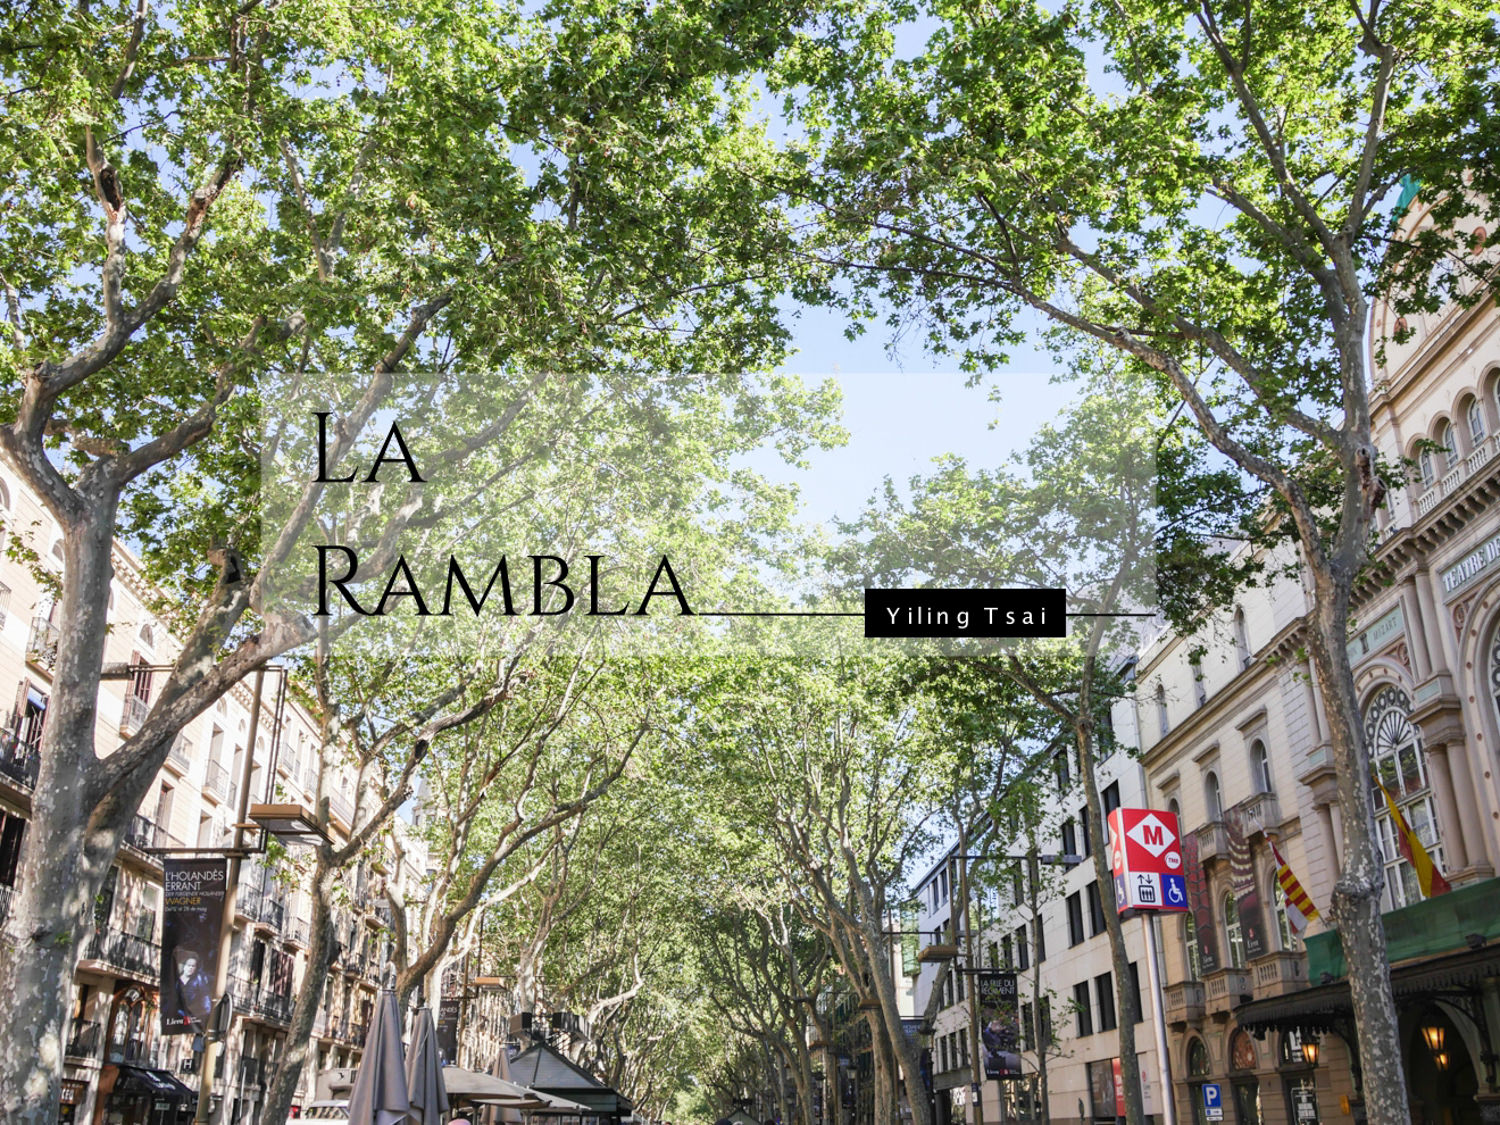 西班牙巴塞隆納景點 蘭布拉大道La Rambla、加泰隆尼亞廣場、貝爾港Port Vell